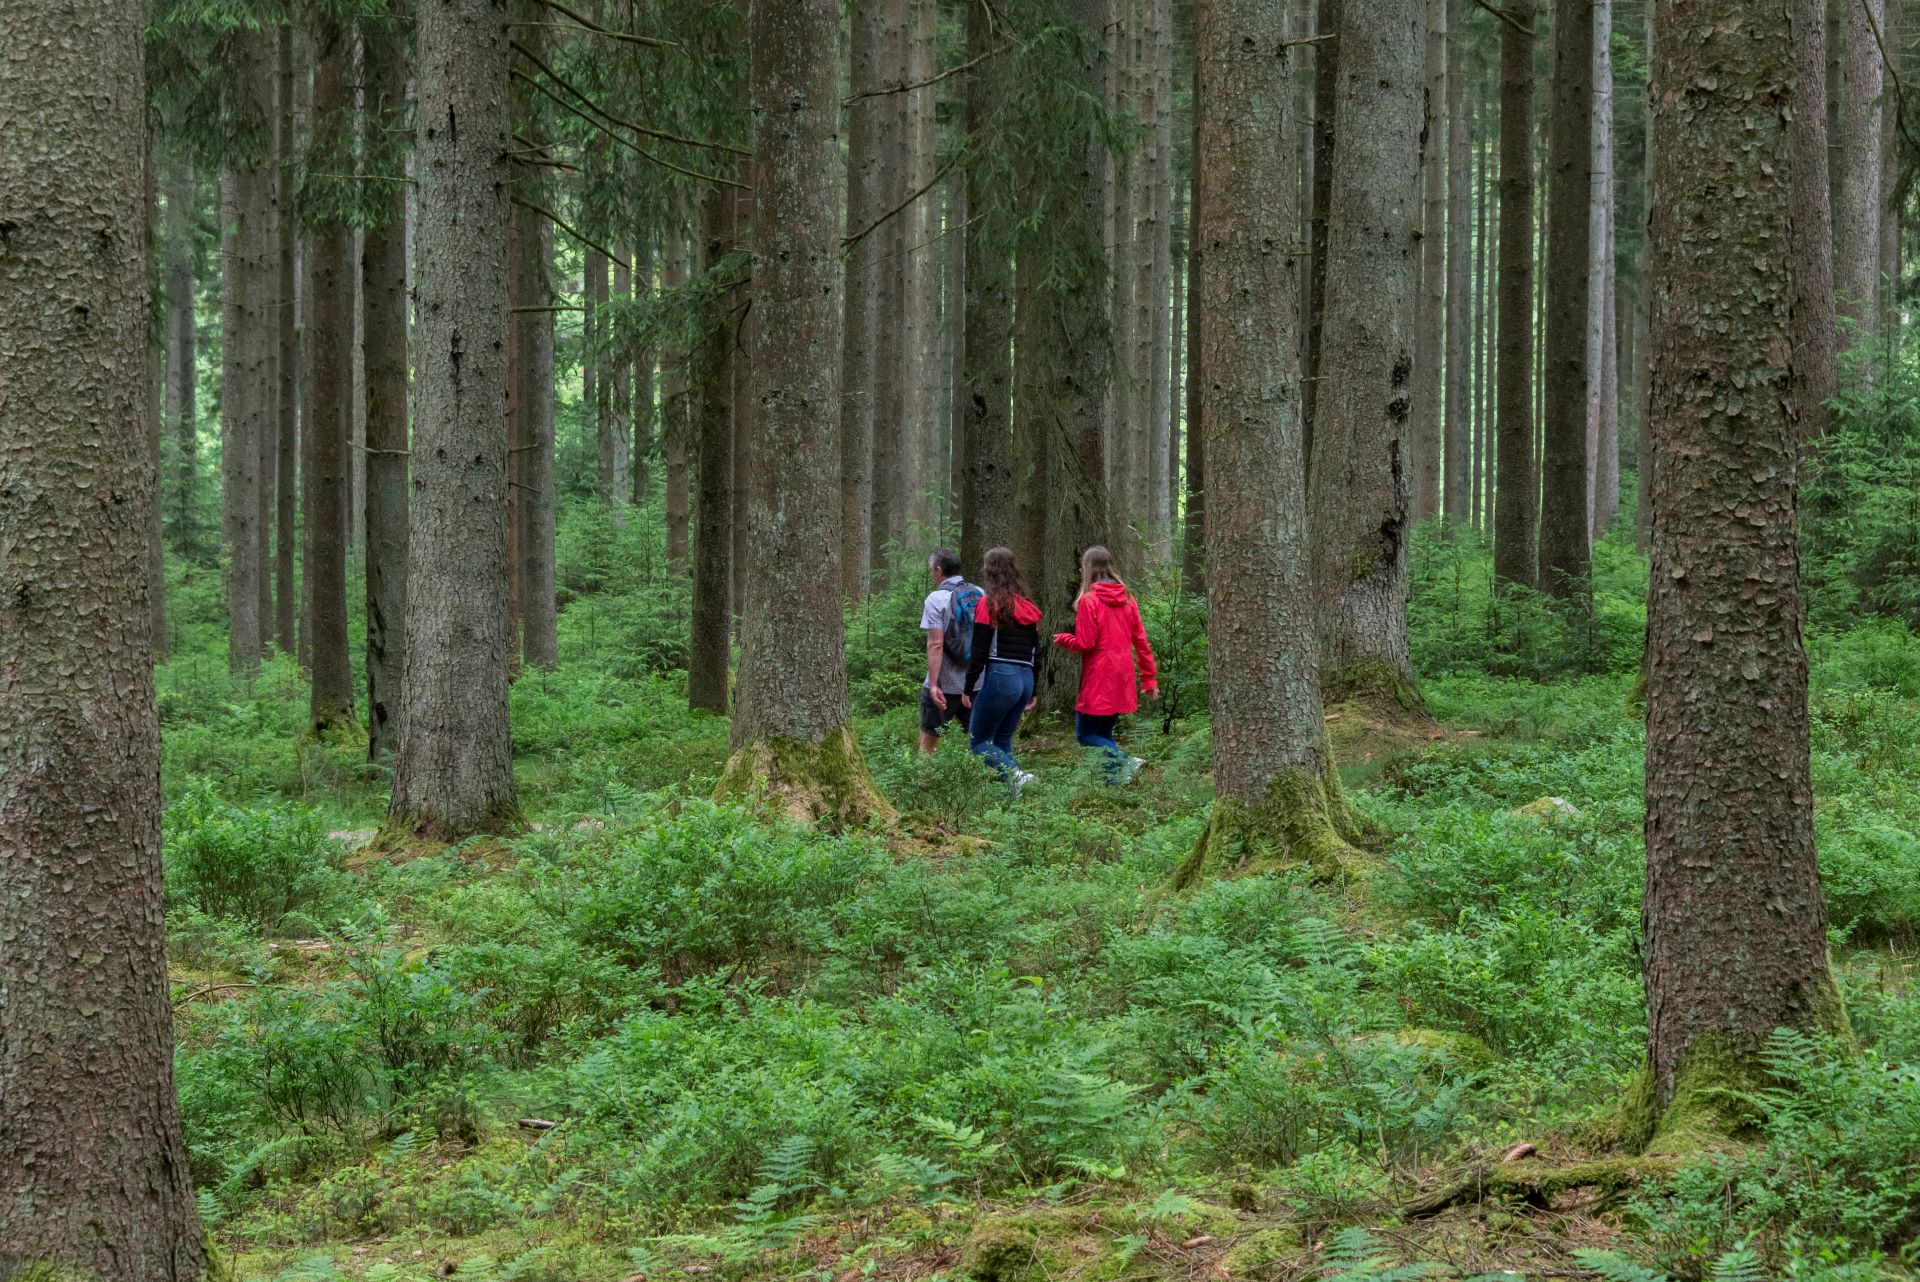 Trois randonneurs sont visibles de loin, ils portent des vêtements clairs. Ils traversent une forêt avec des arbres immenses et des plantes vertes basses.